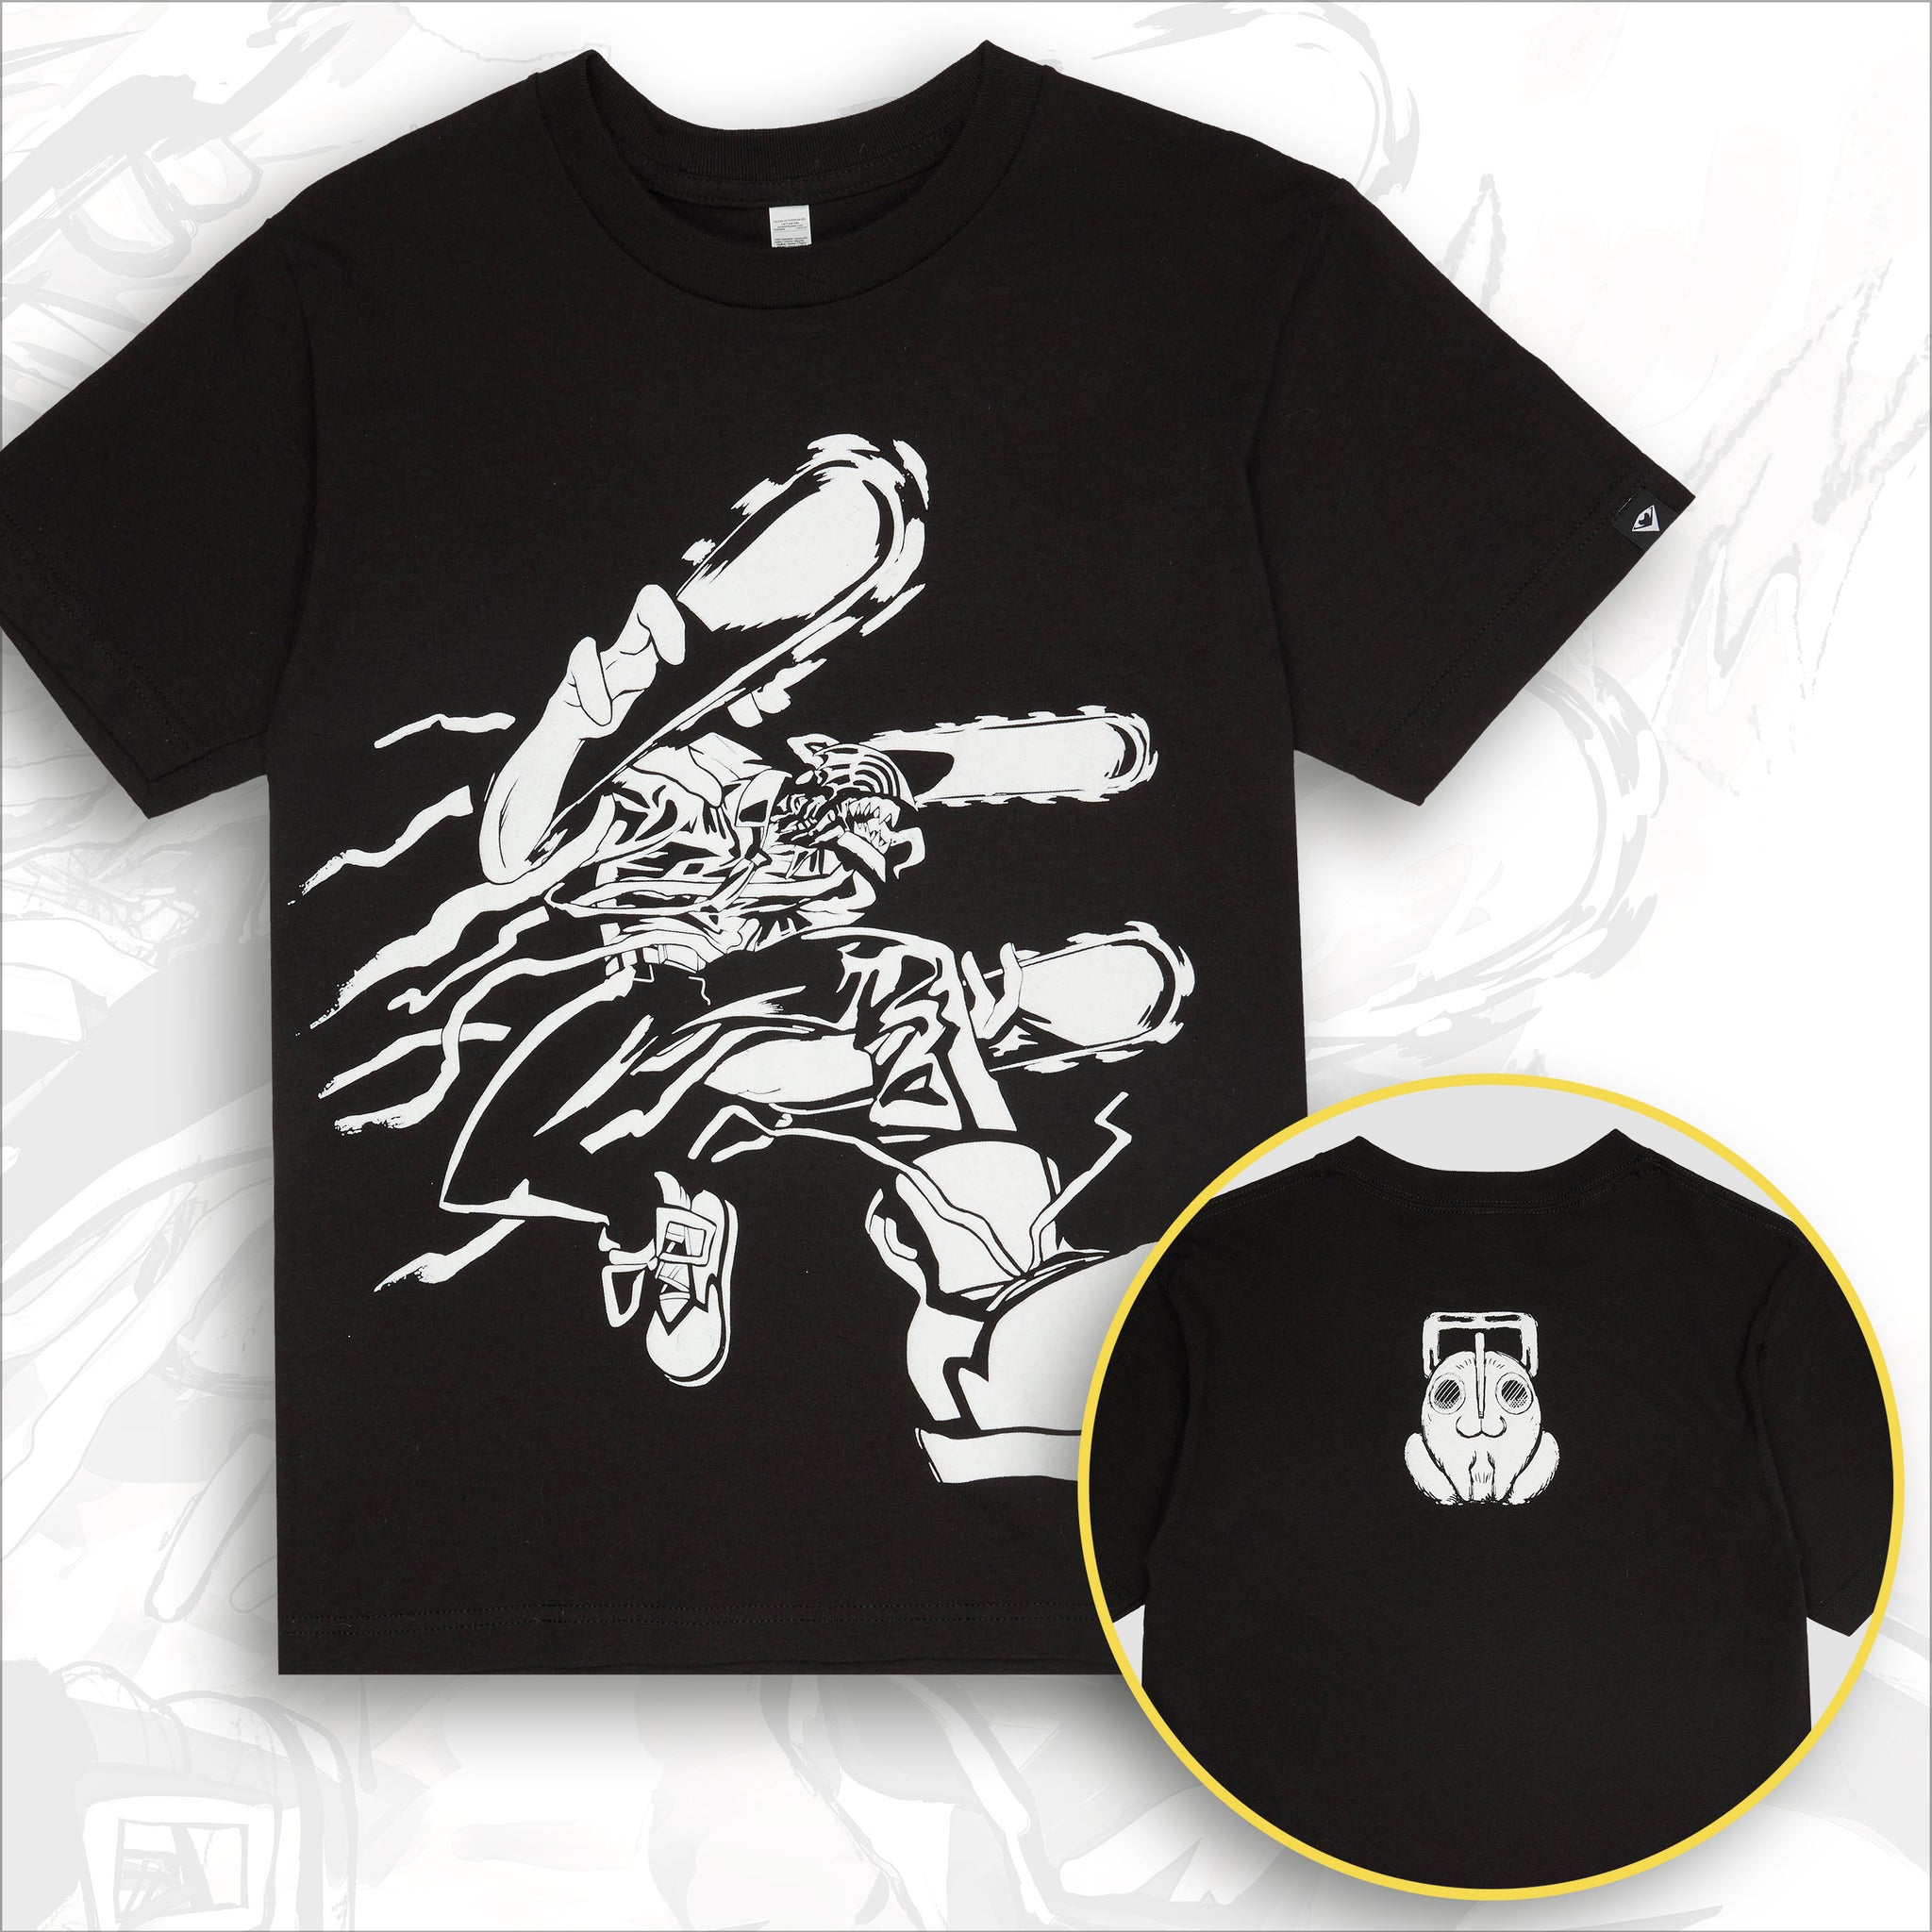 Chains of Fate | T-shirt | Black x White Puff-Print